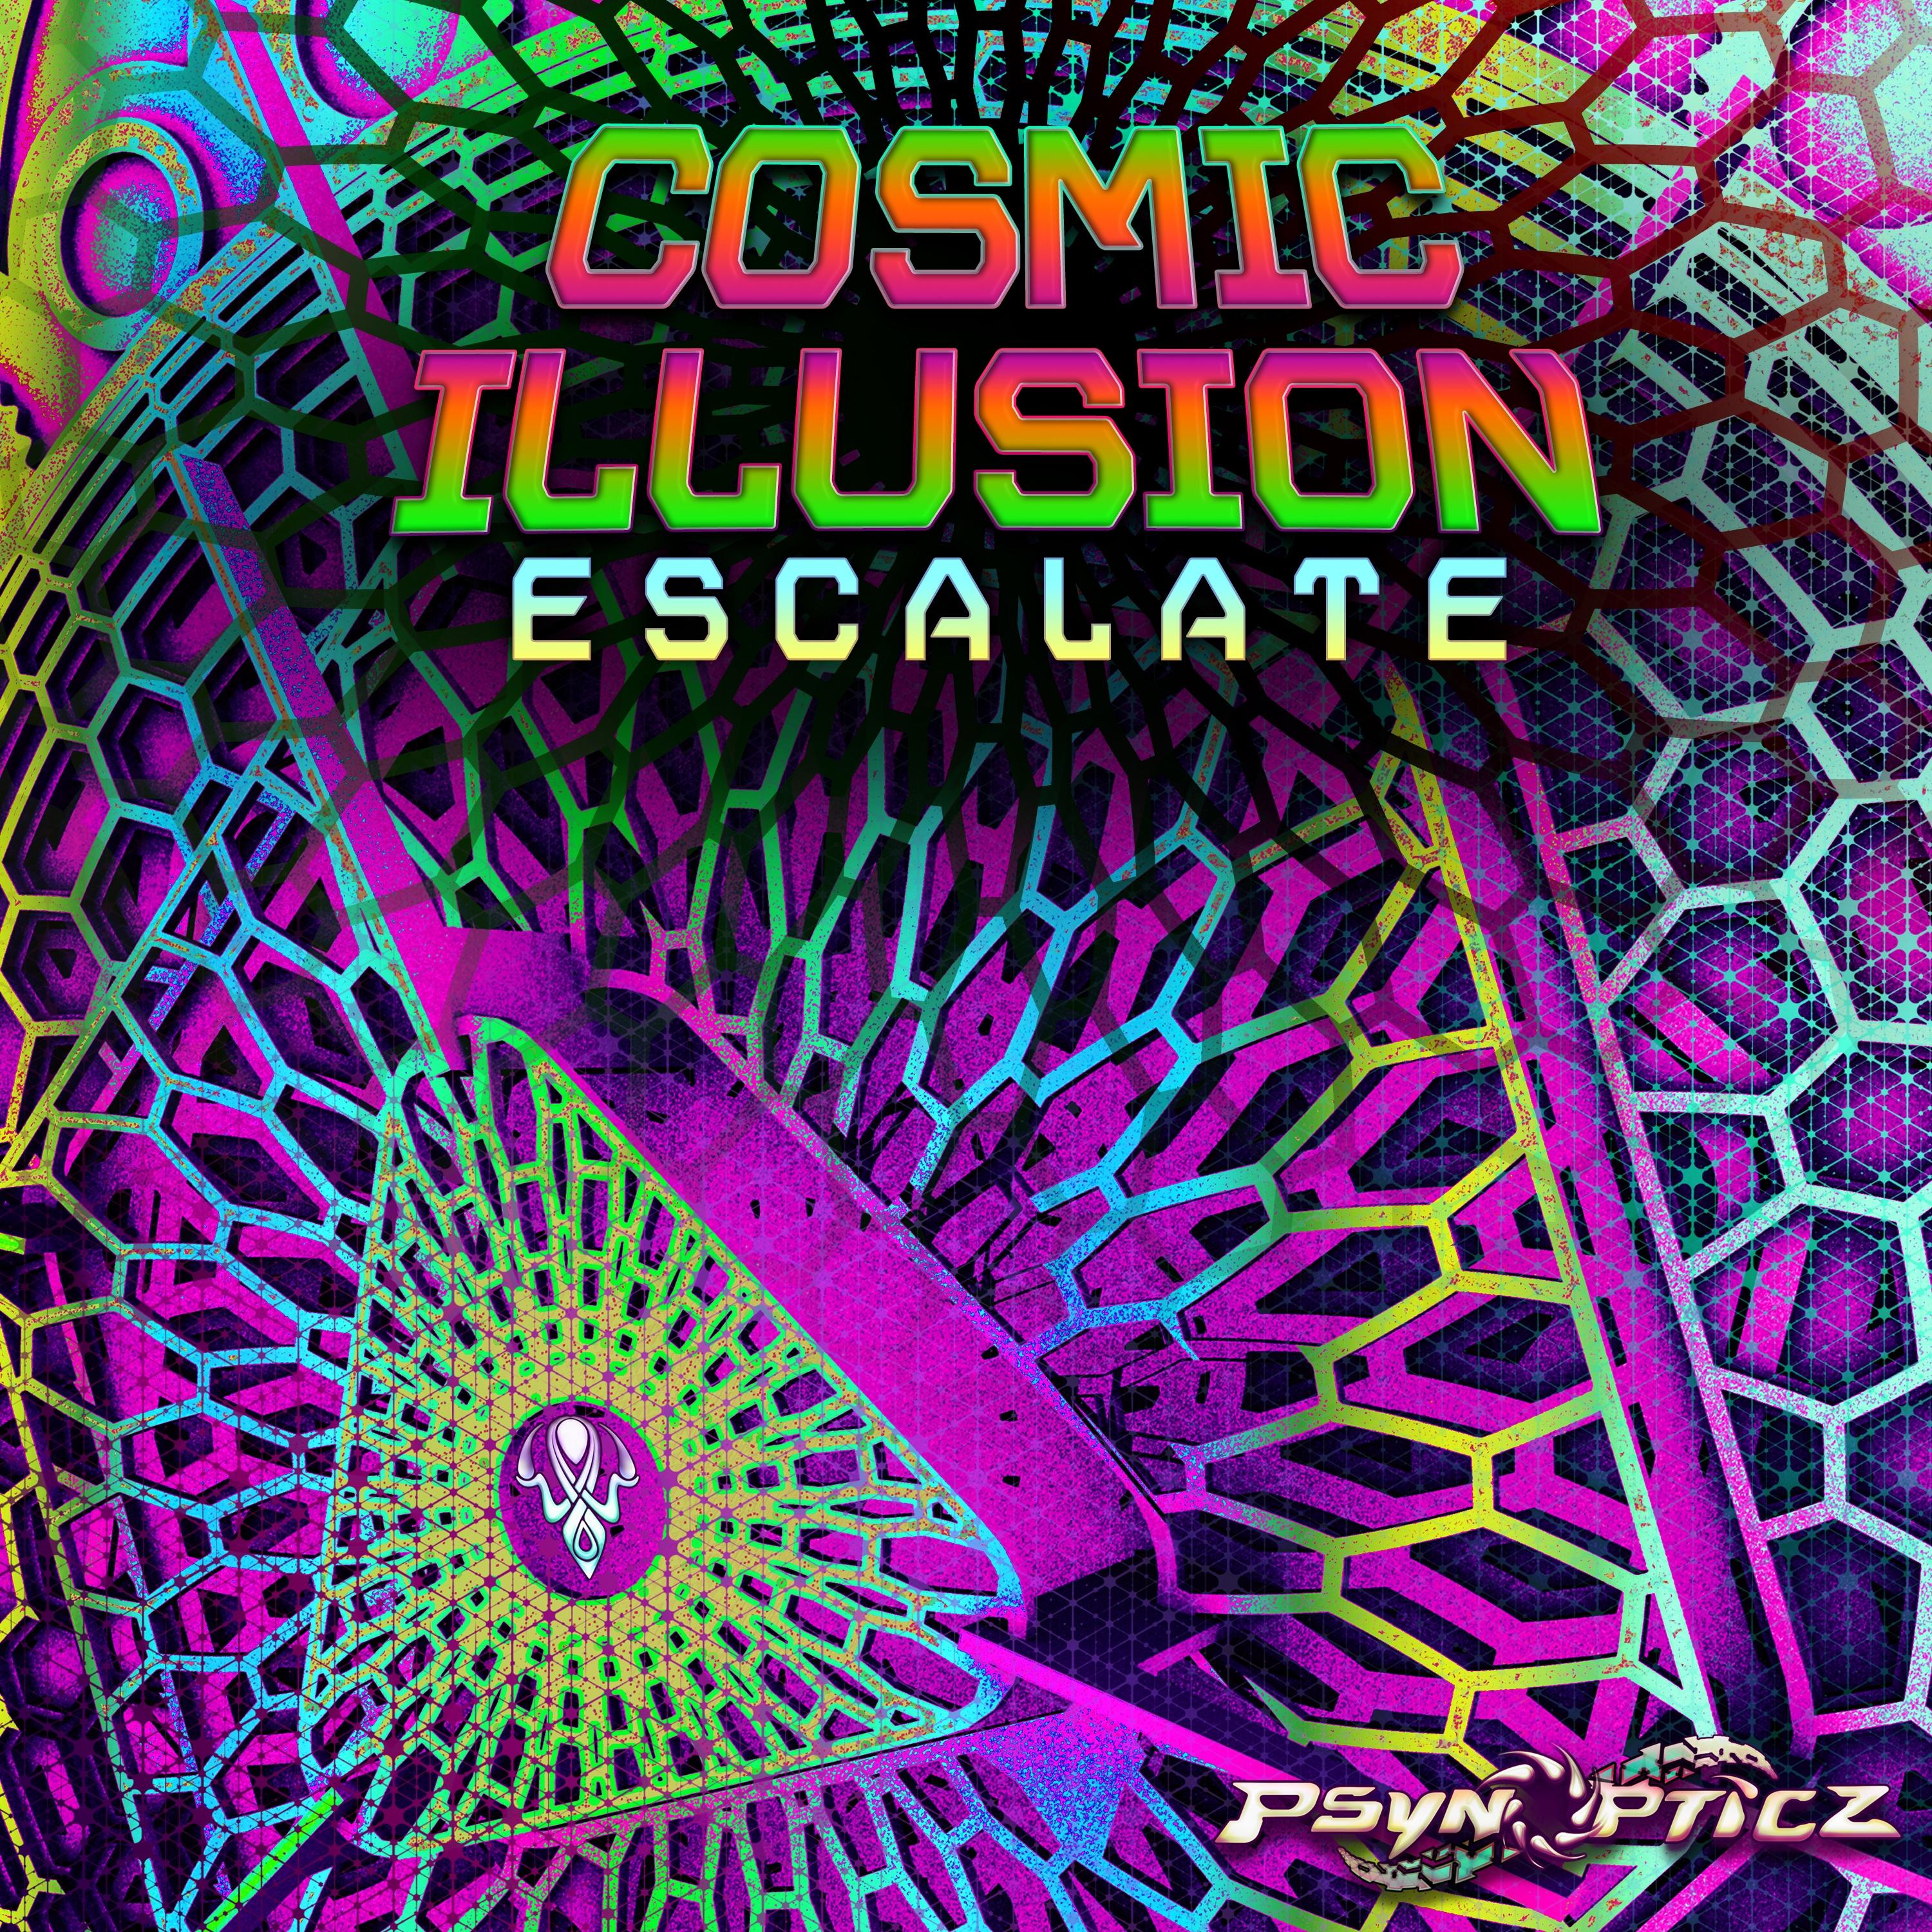 Cosmic Illusion - Future Process